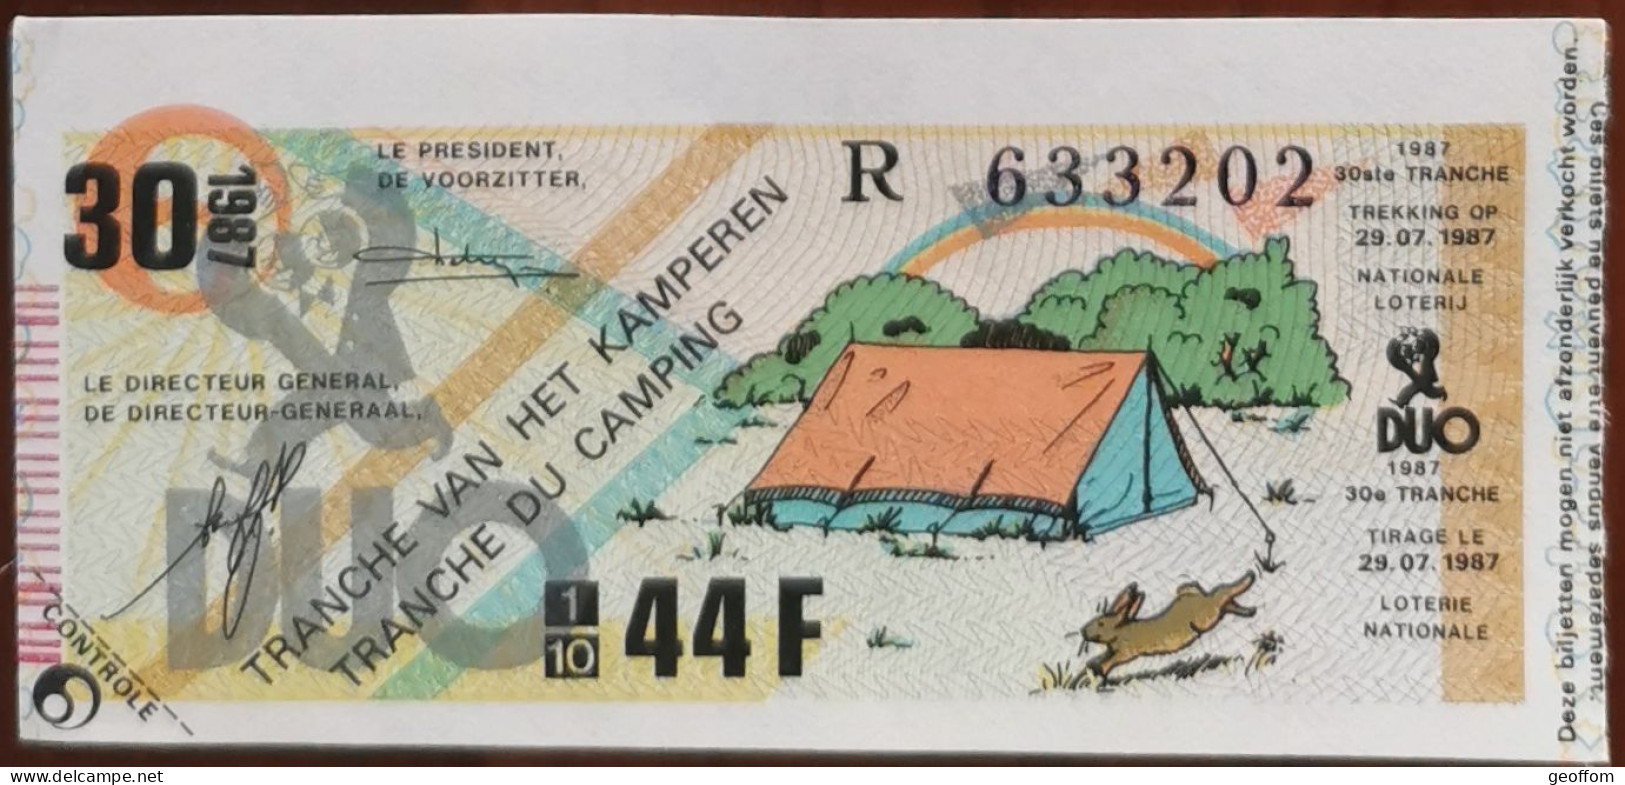 Billet De Loterie Nationale Belgique 1987 30e Tranche Du Camping- 29-7-1987 - Billetes De Lotería